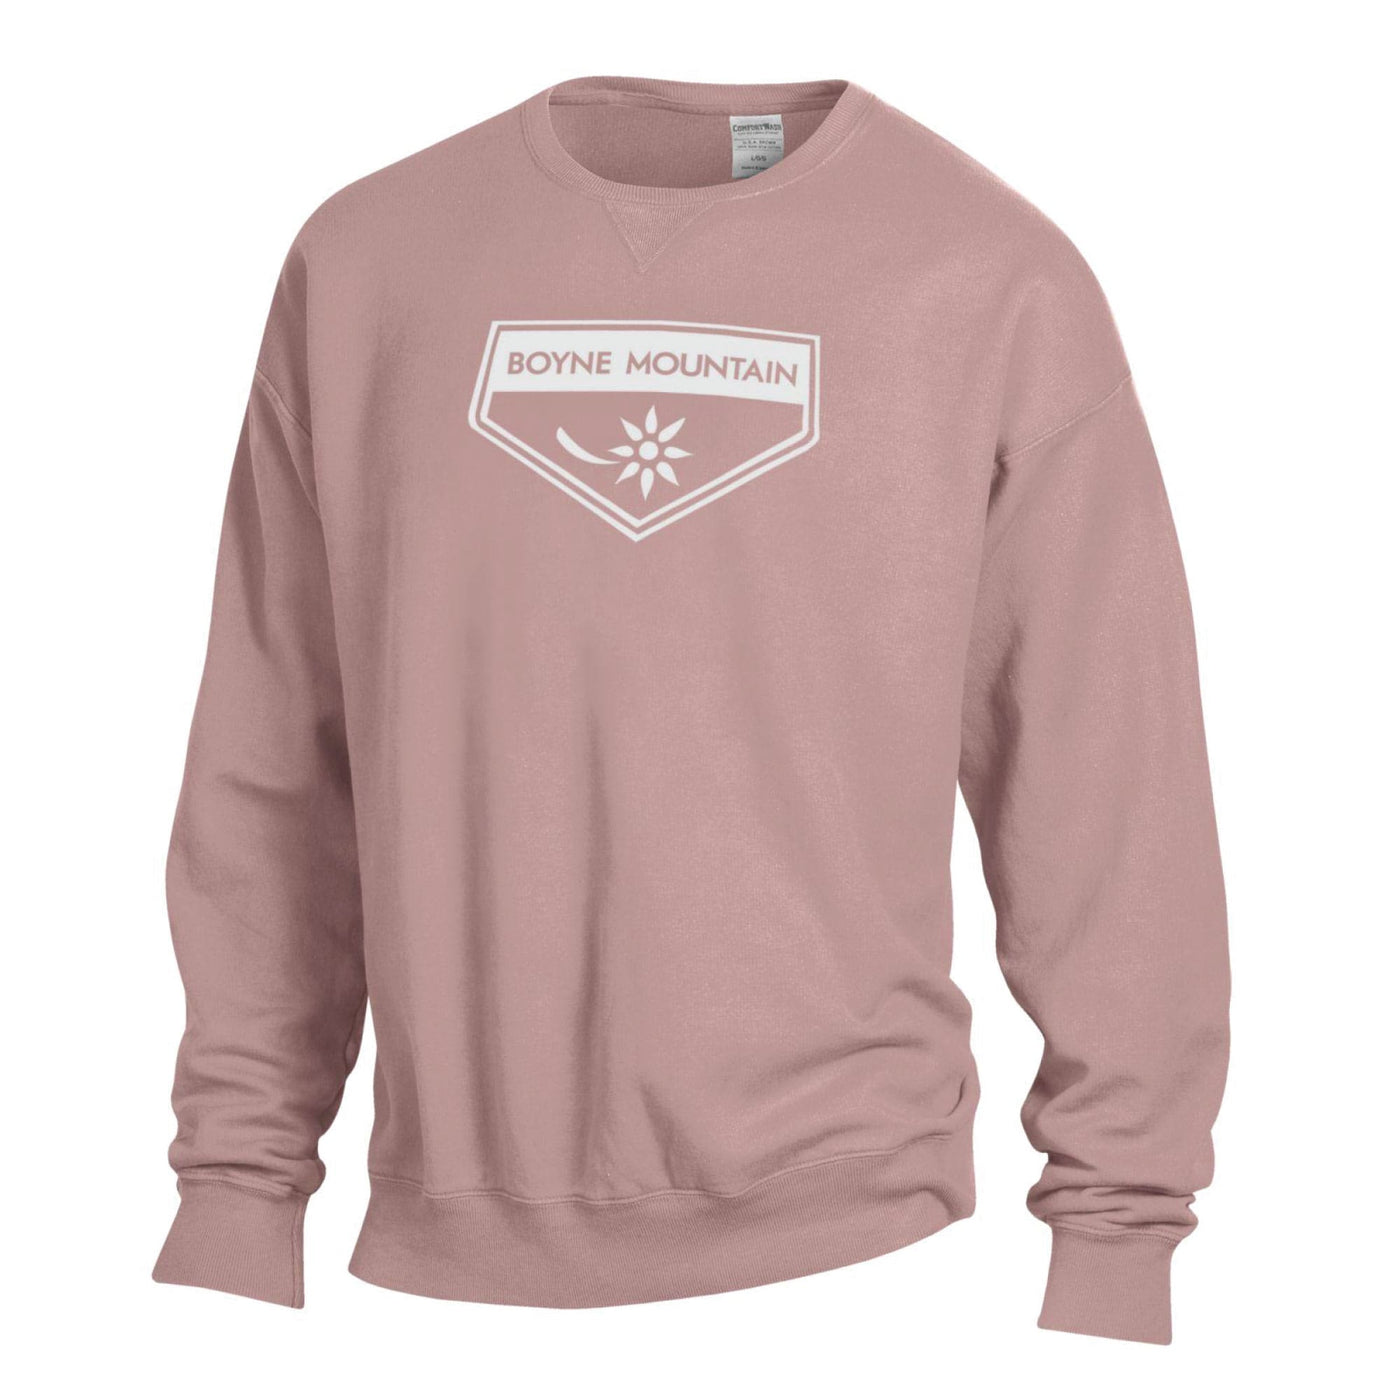 Boyne Mountain Comfort Wash Crew Sweatshirt SMALL